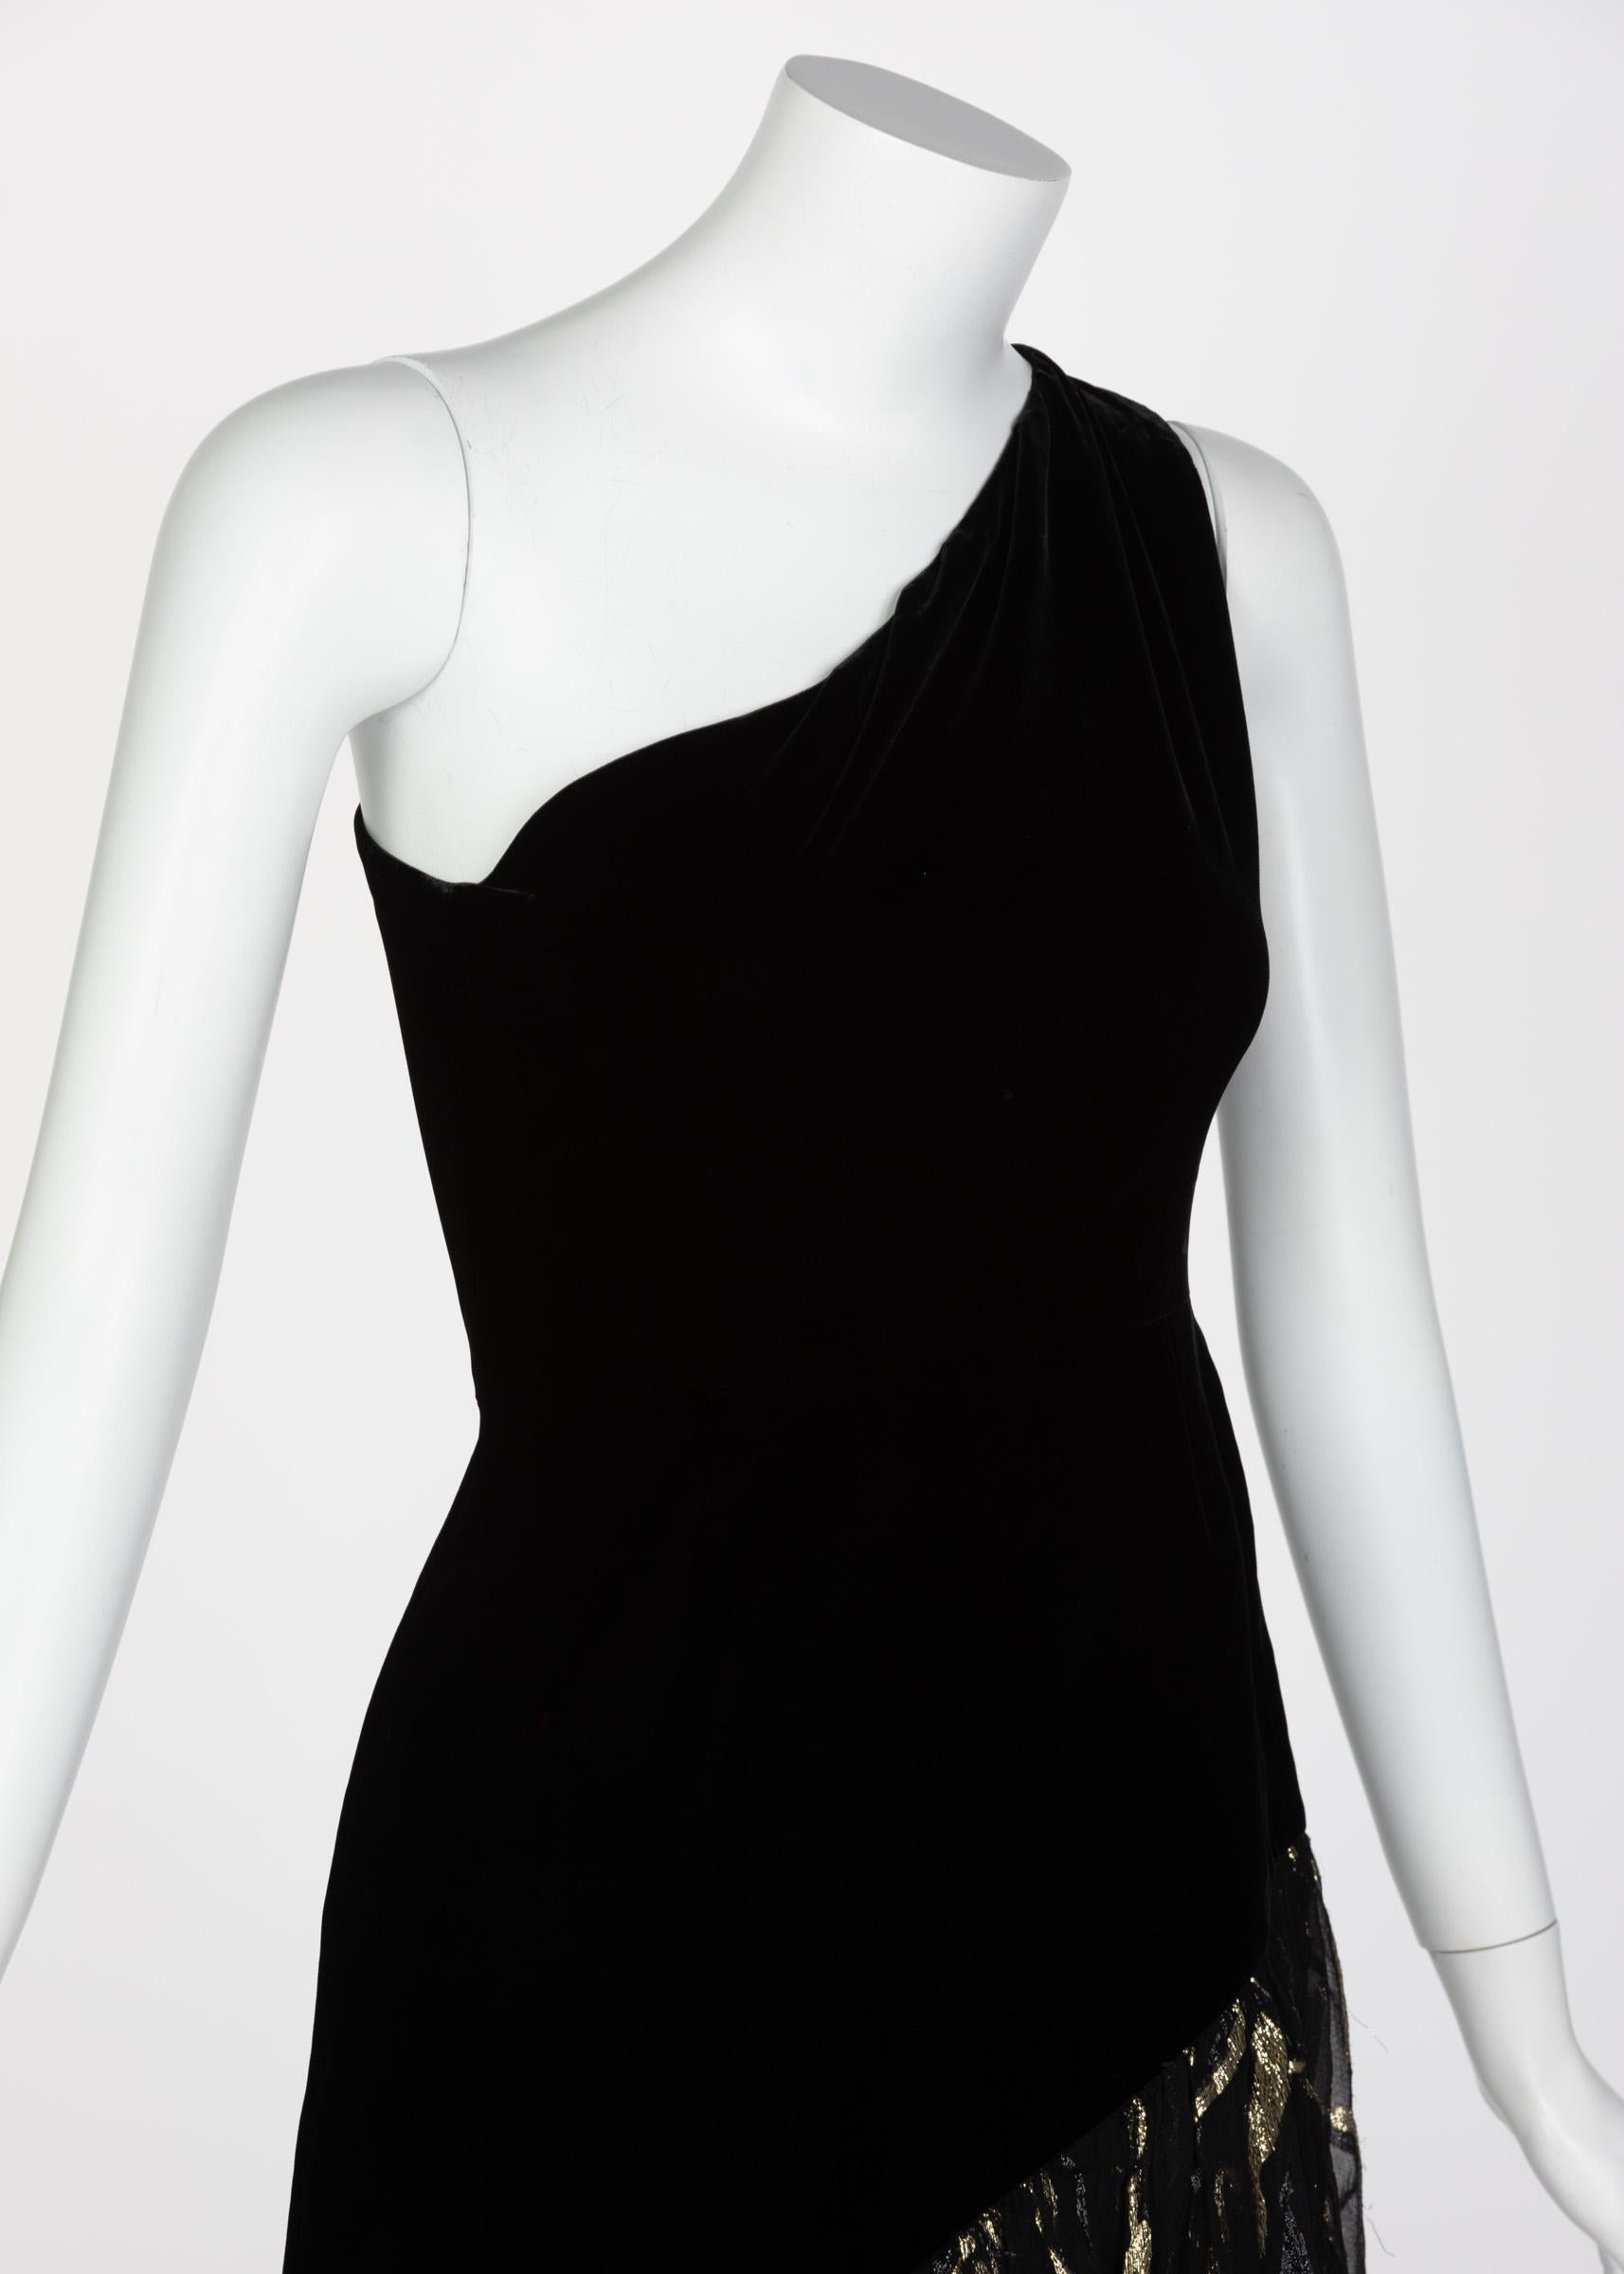 Saint Laurent YSL One shoulder Black Velvet Metallic Layered Dress, 1980s 2